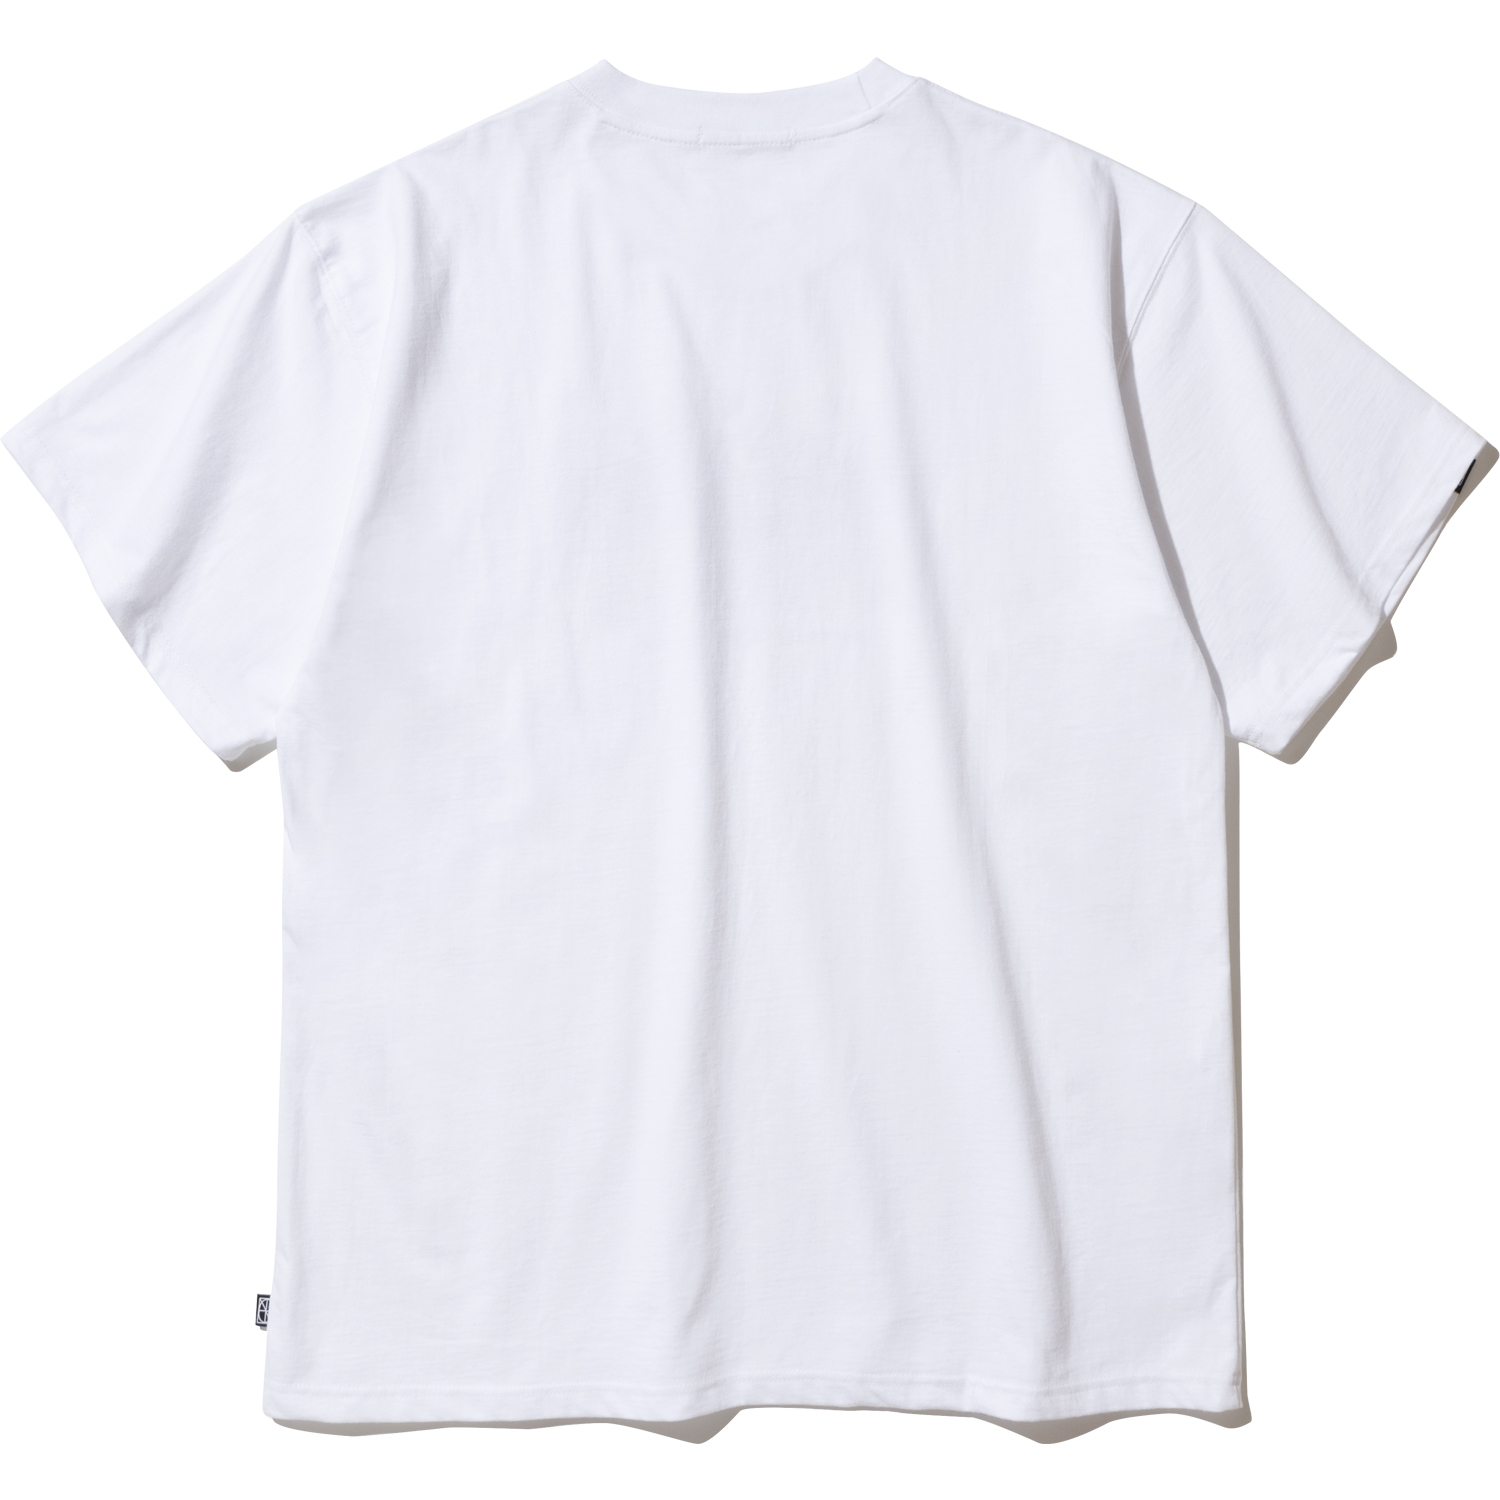 Burn up T-Shirts - White,NOT4NERD